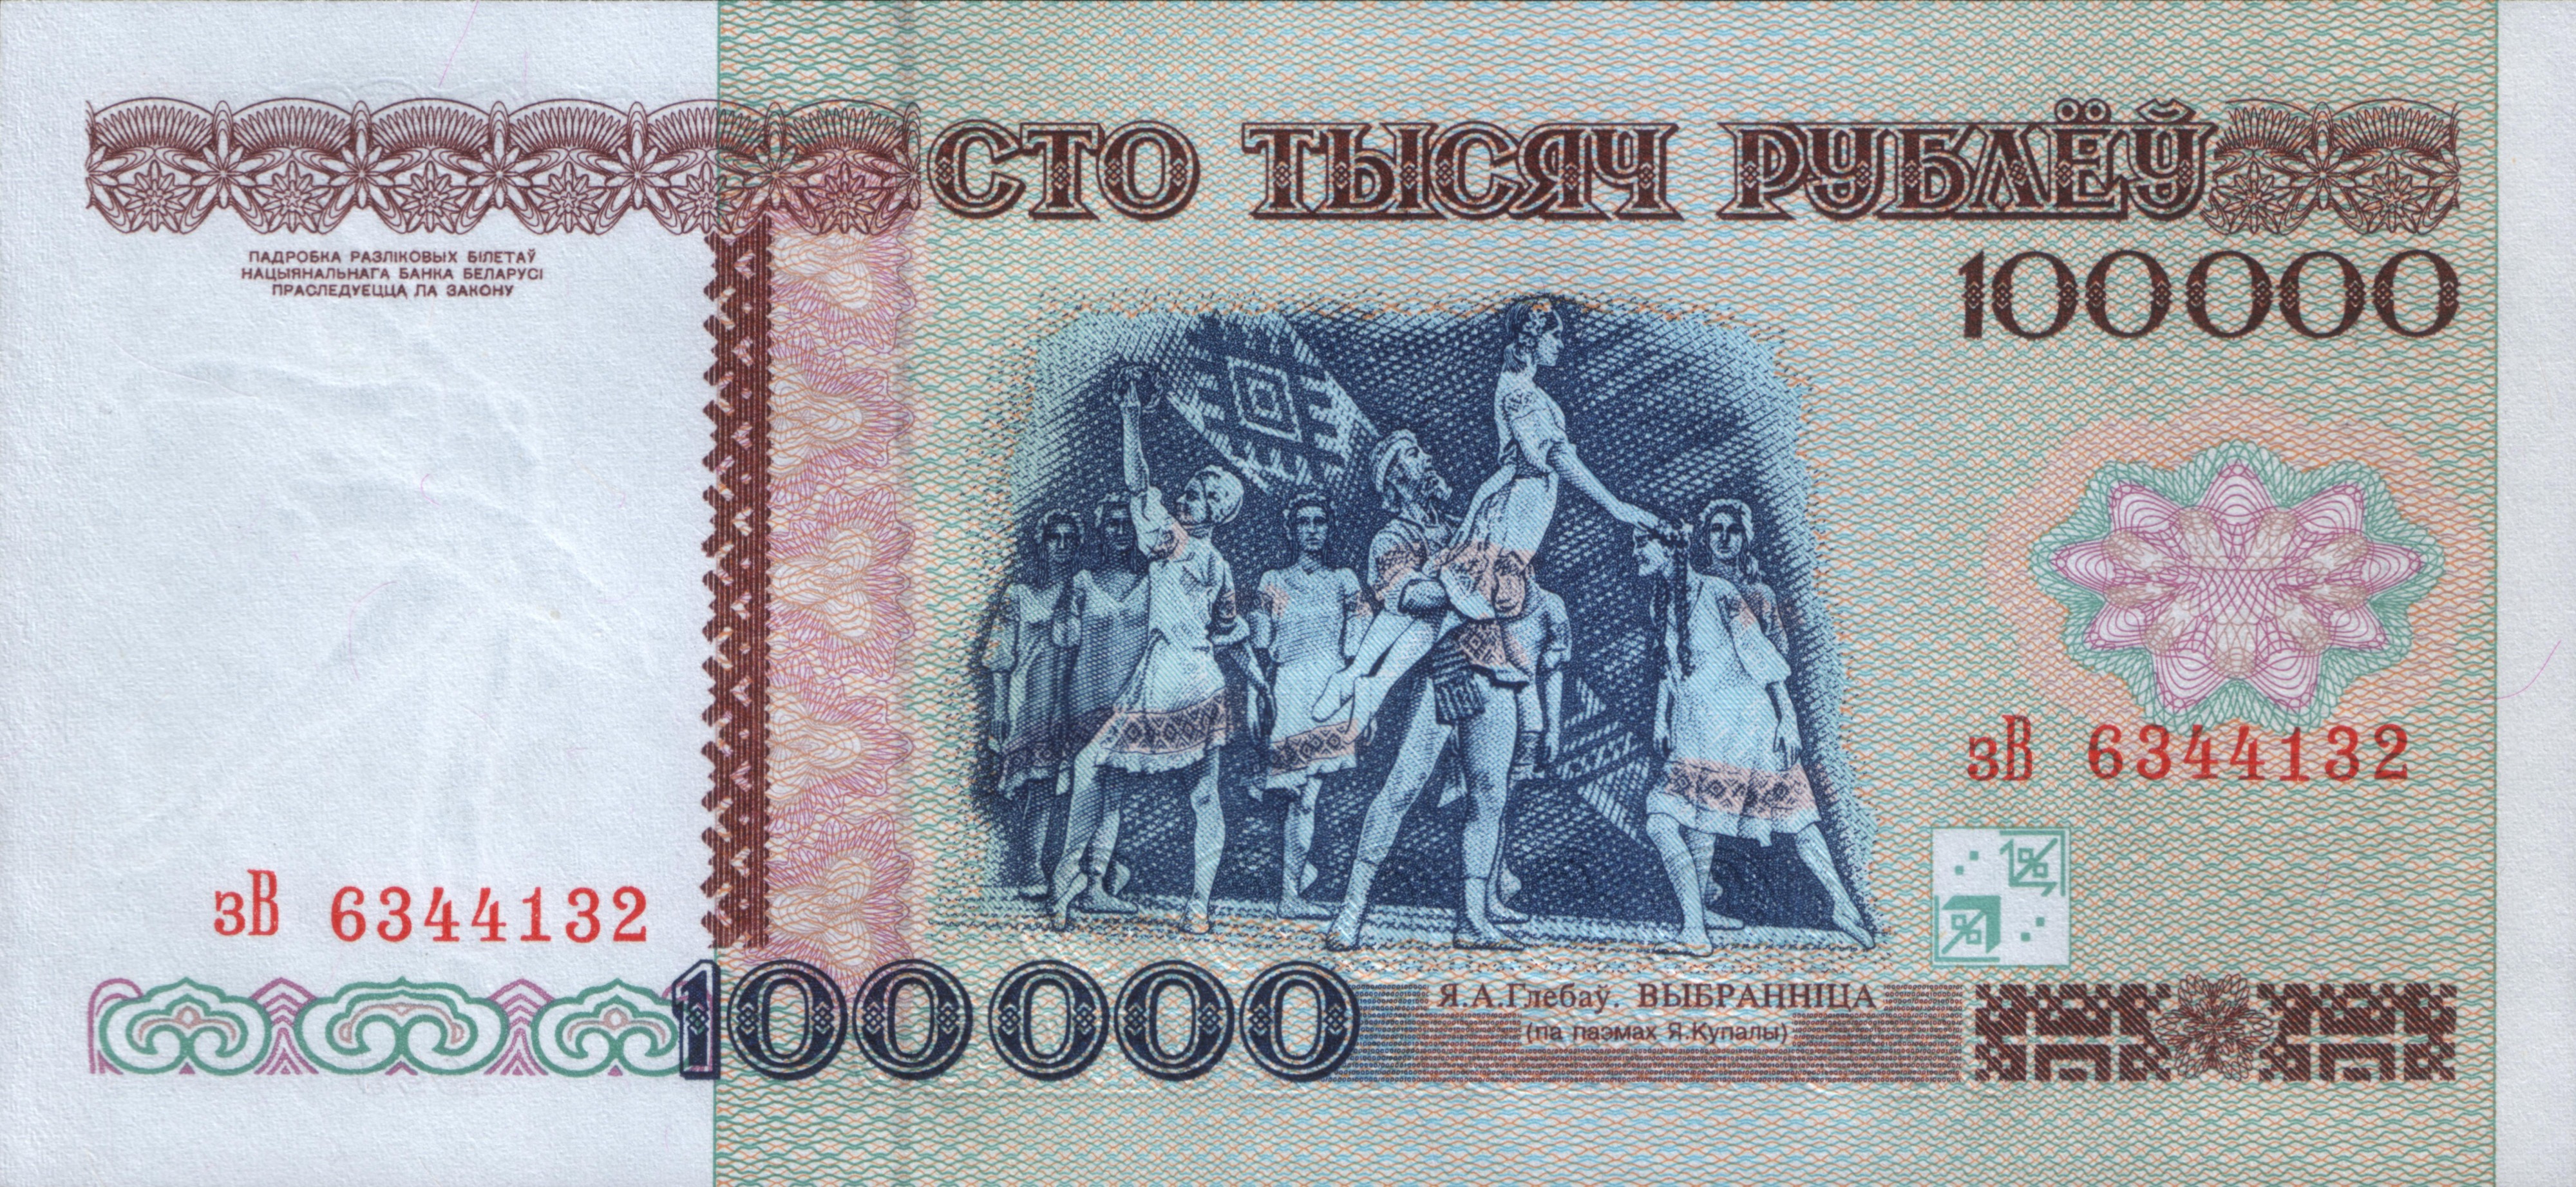 Belarus-1996-Bill-100000-Reverse